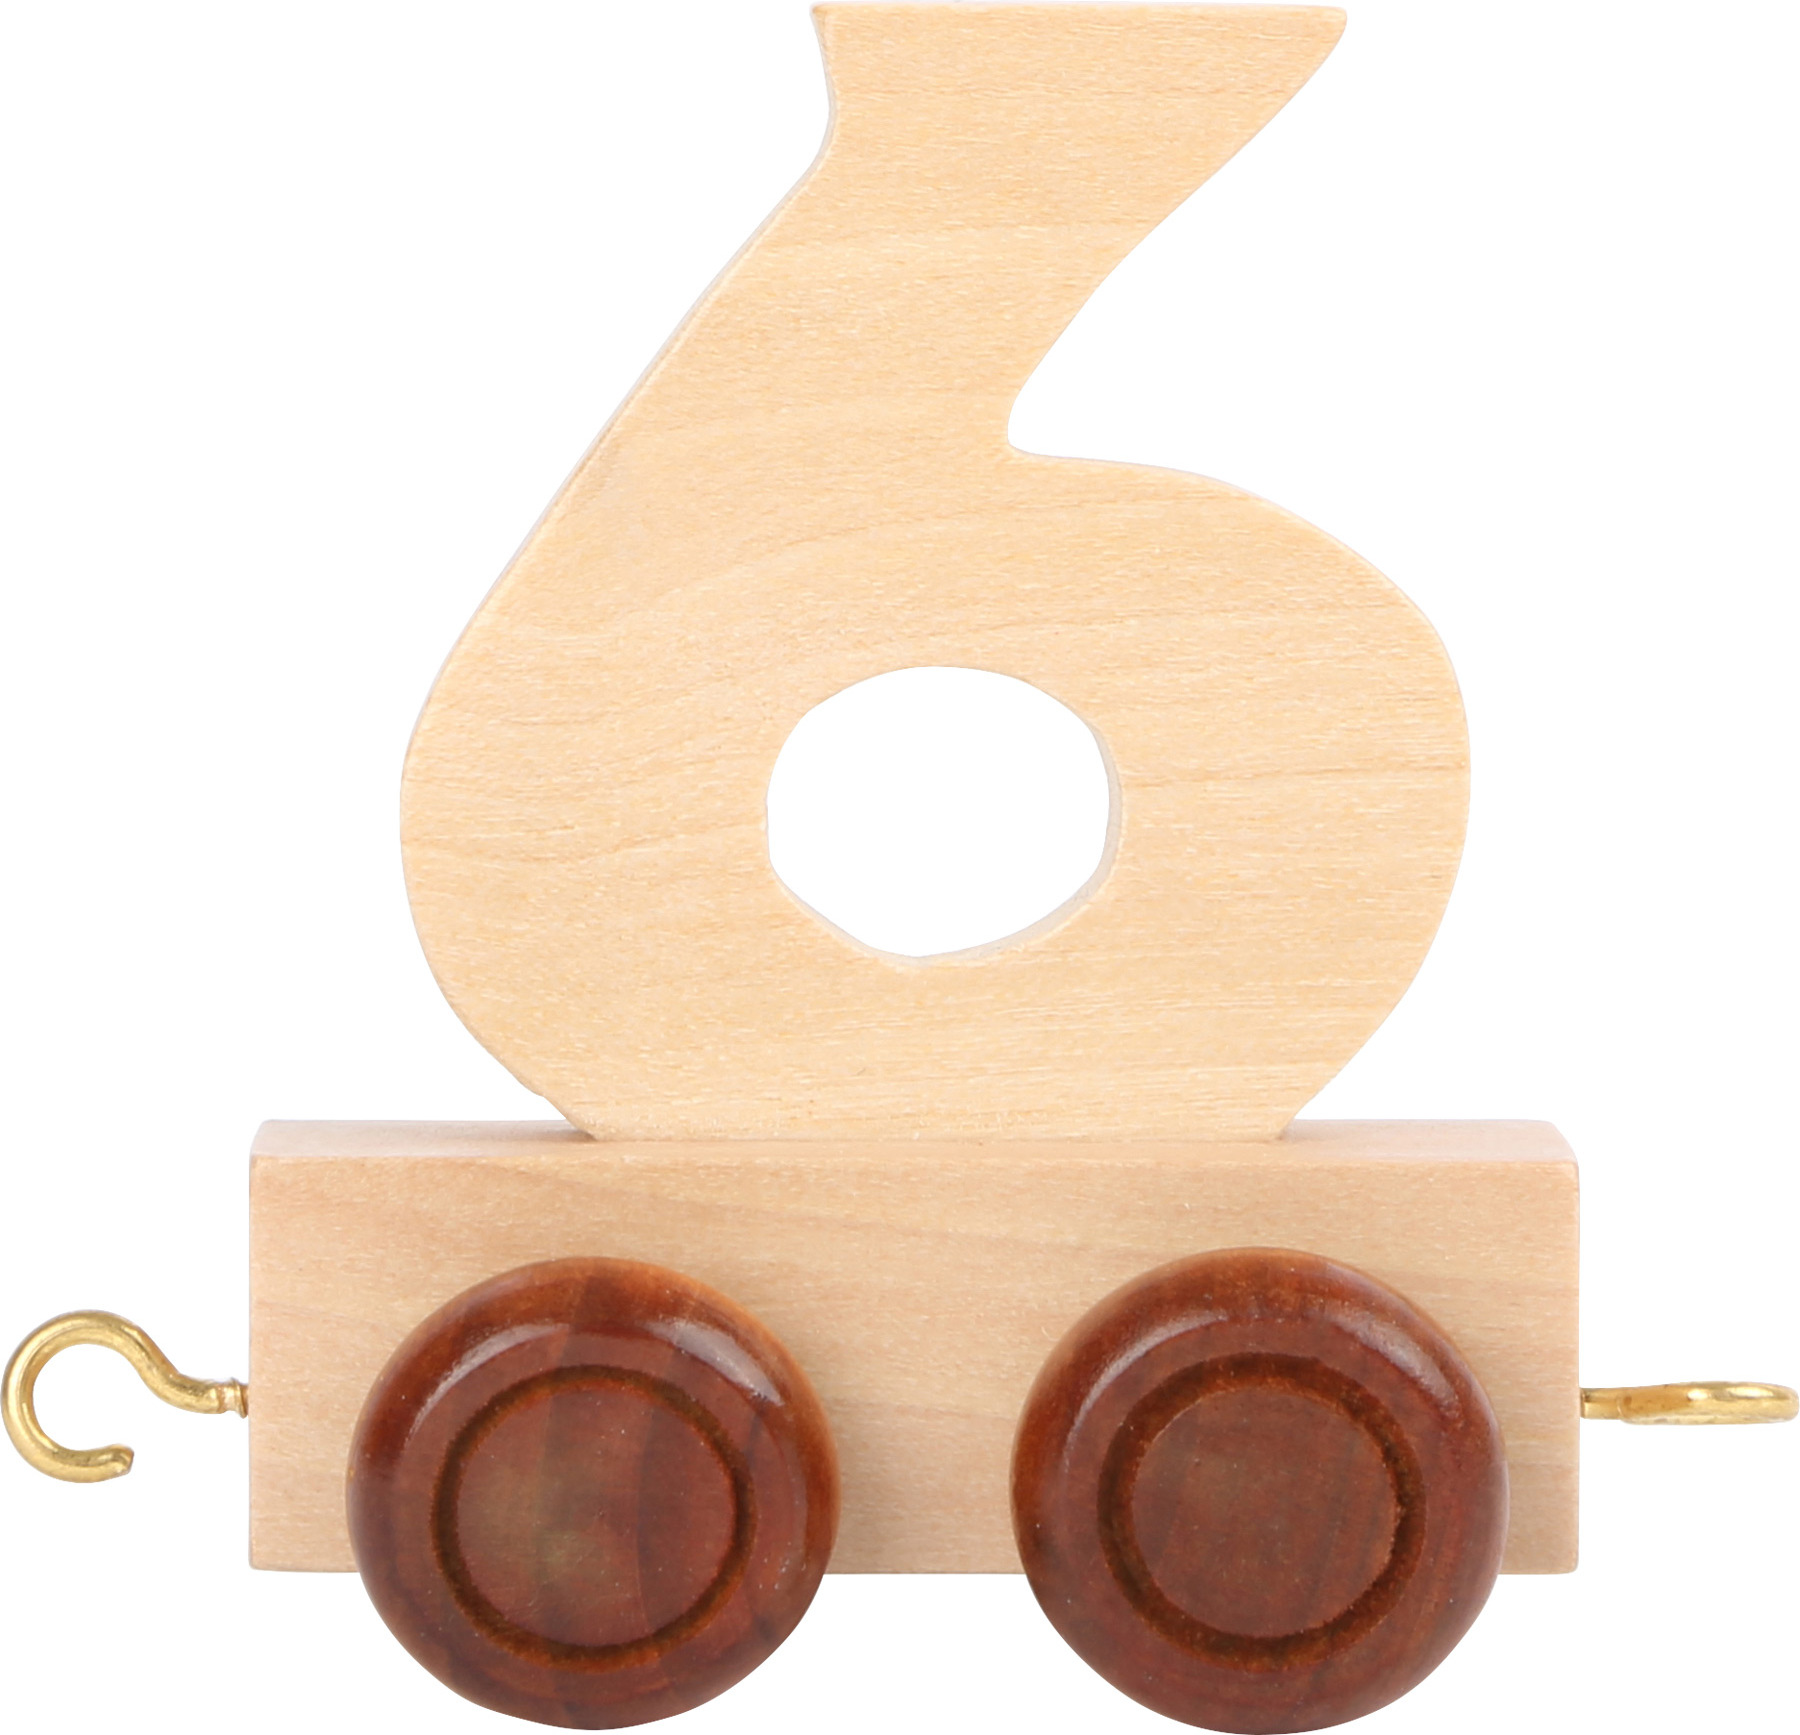 Vagónik dřevěné vláčkodráhy - přírodní číslice - číslo 6